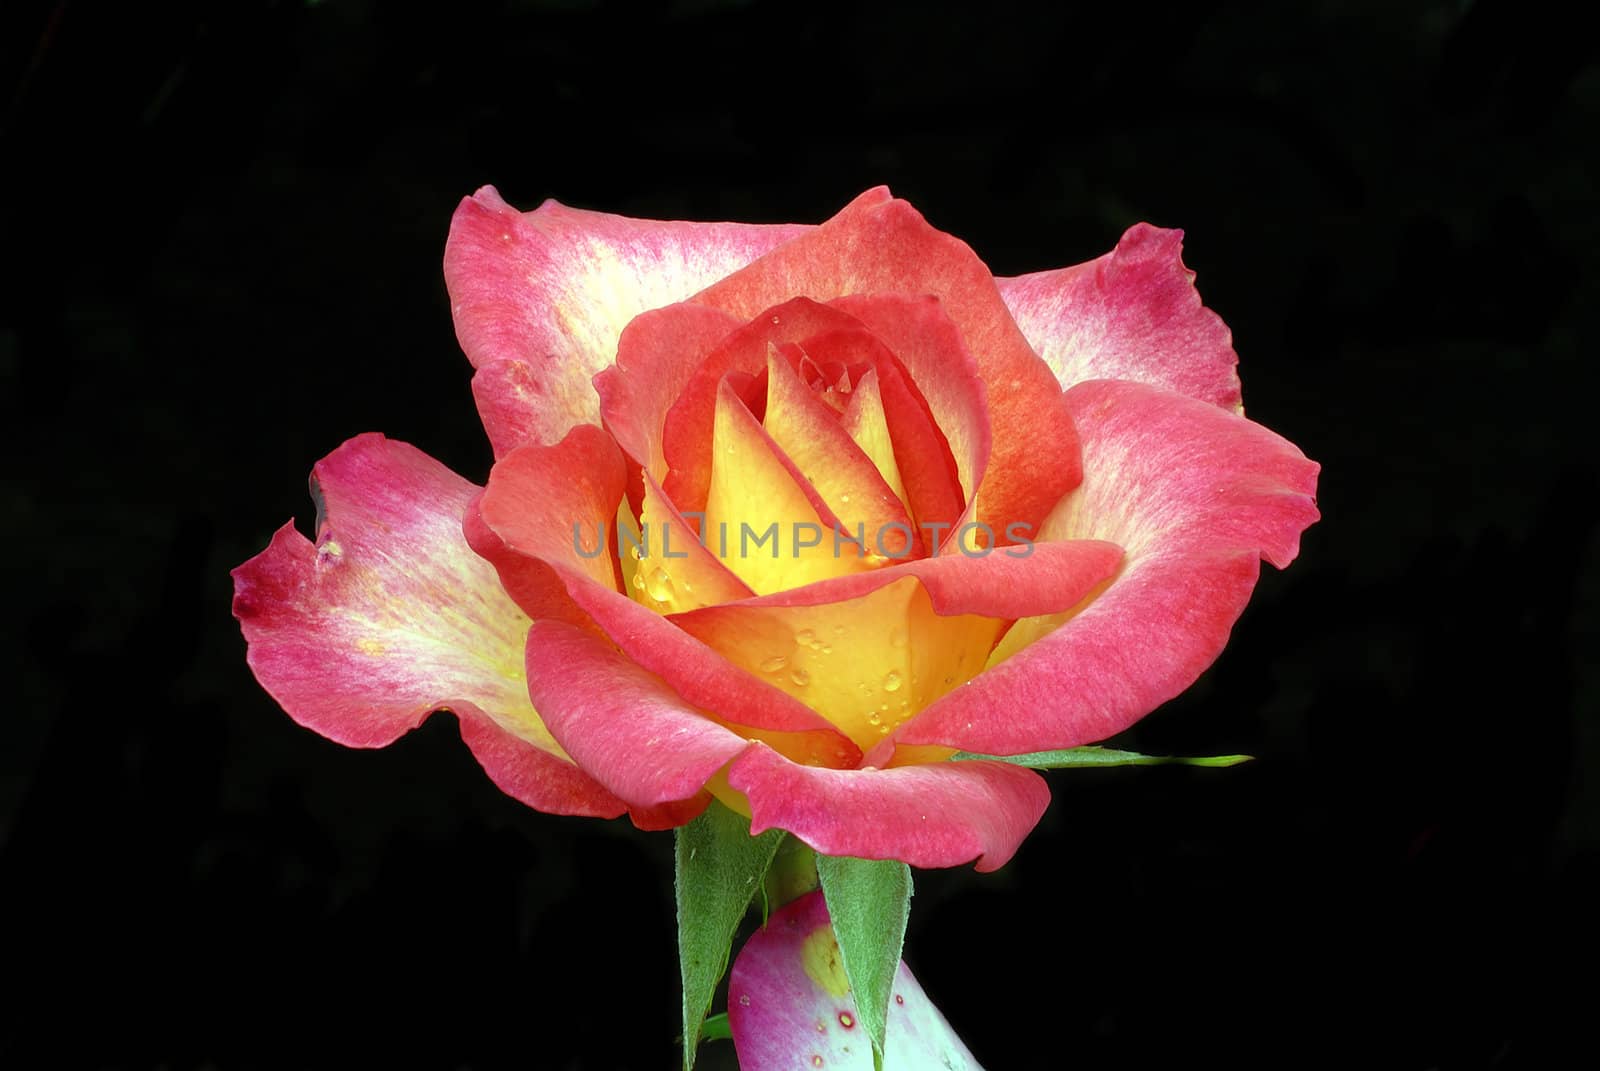 Rainbow Rose Macro by pazham